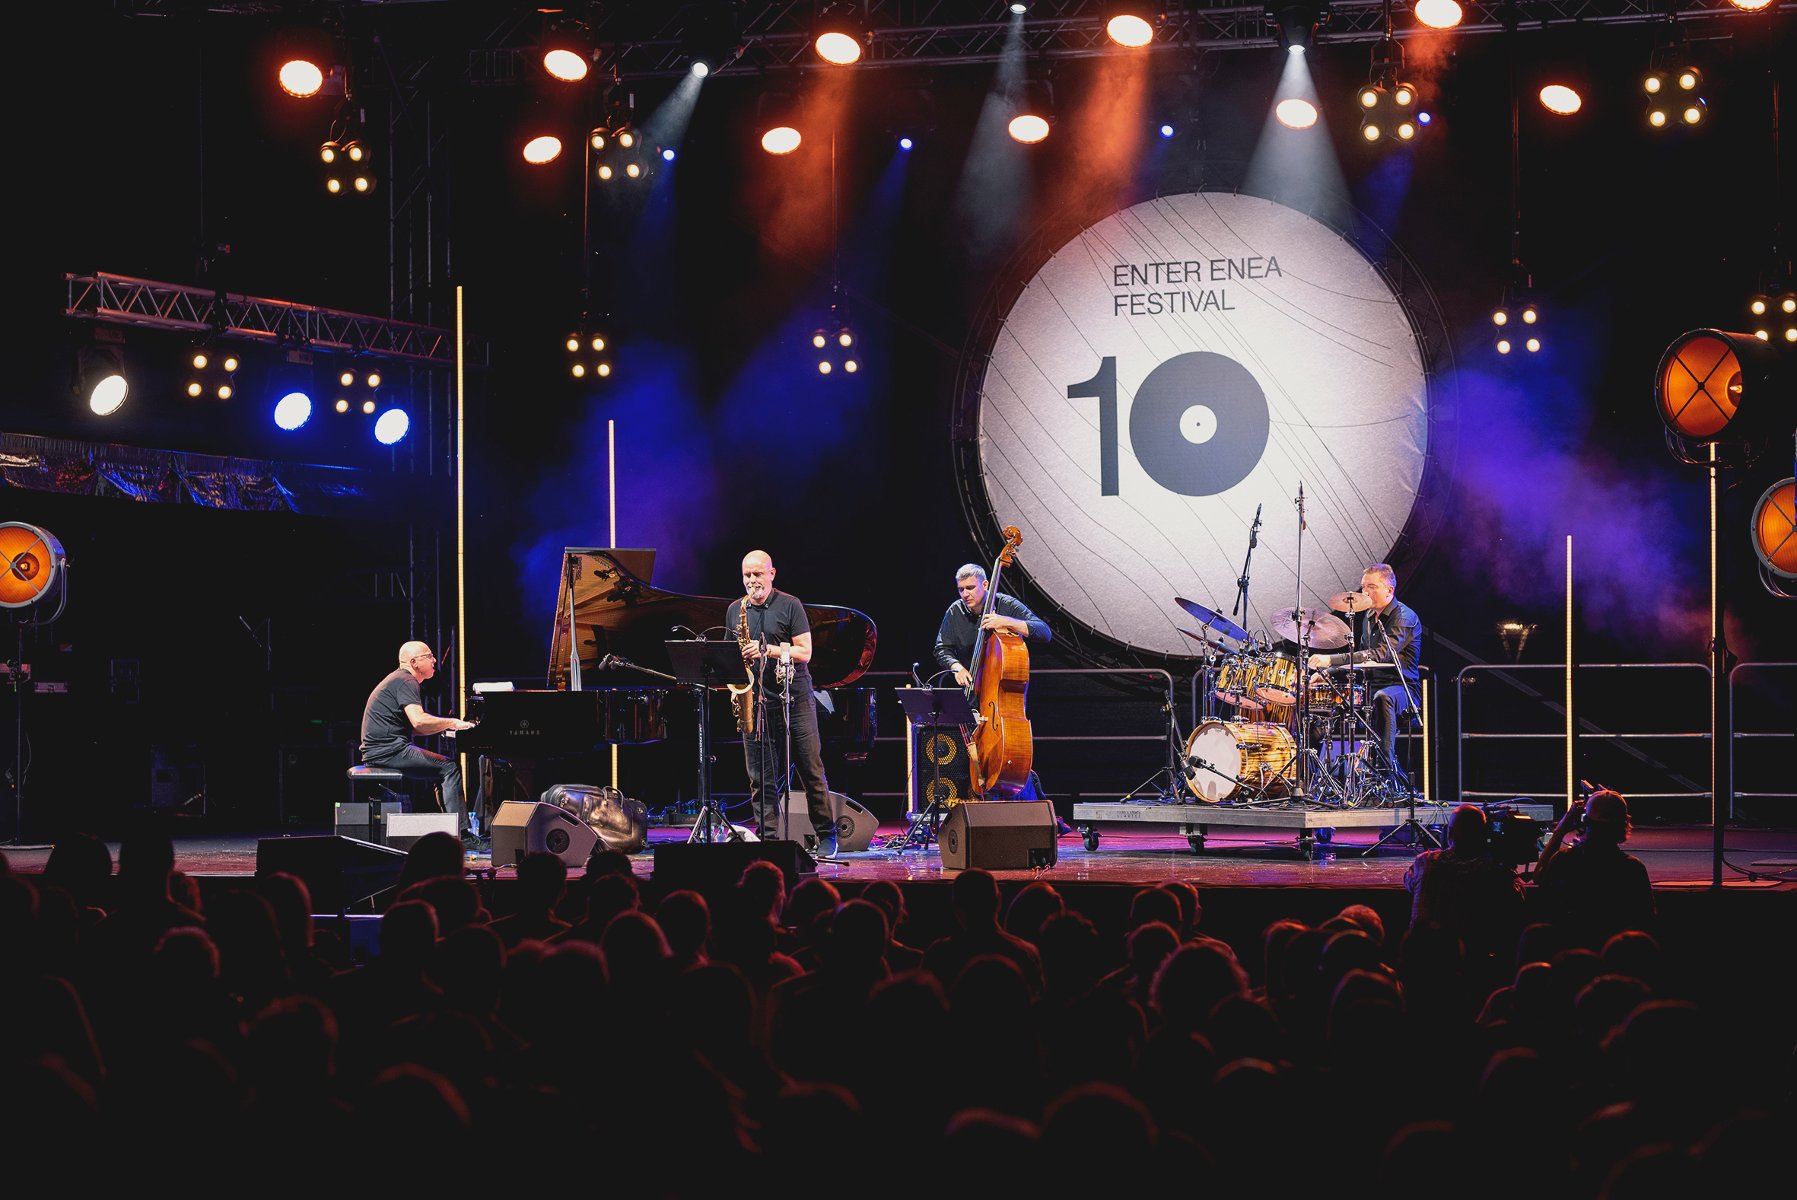 Zdjęcie przedstawia muzyków na scenie. W tle widać napis "Enter Enea Festival" oraz liczbę 10. - grafika artykułu